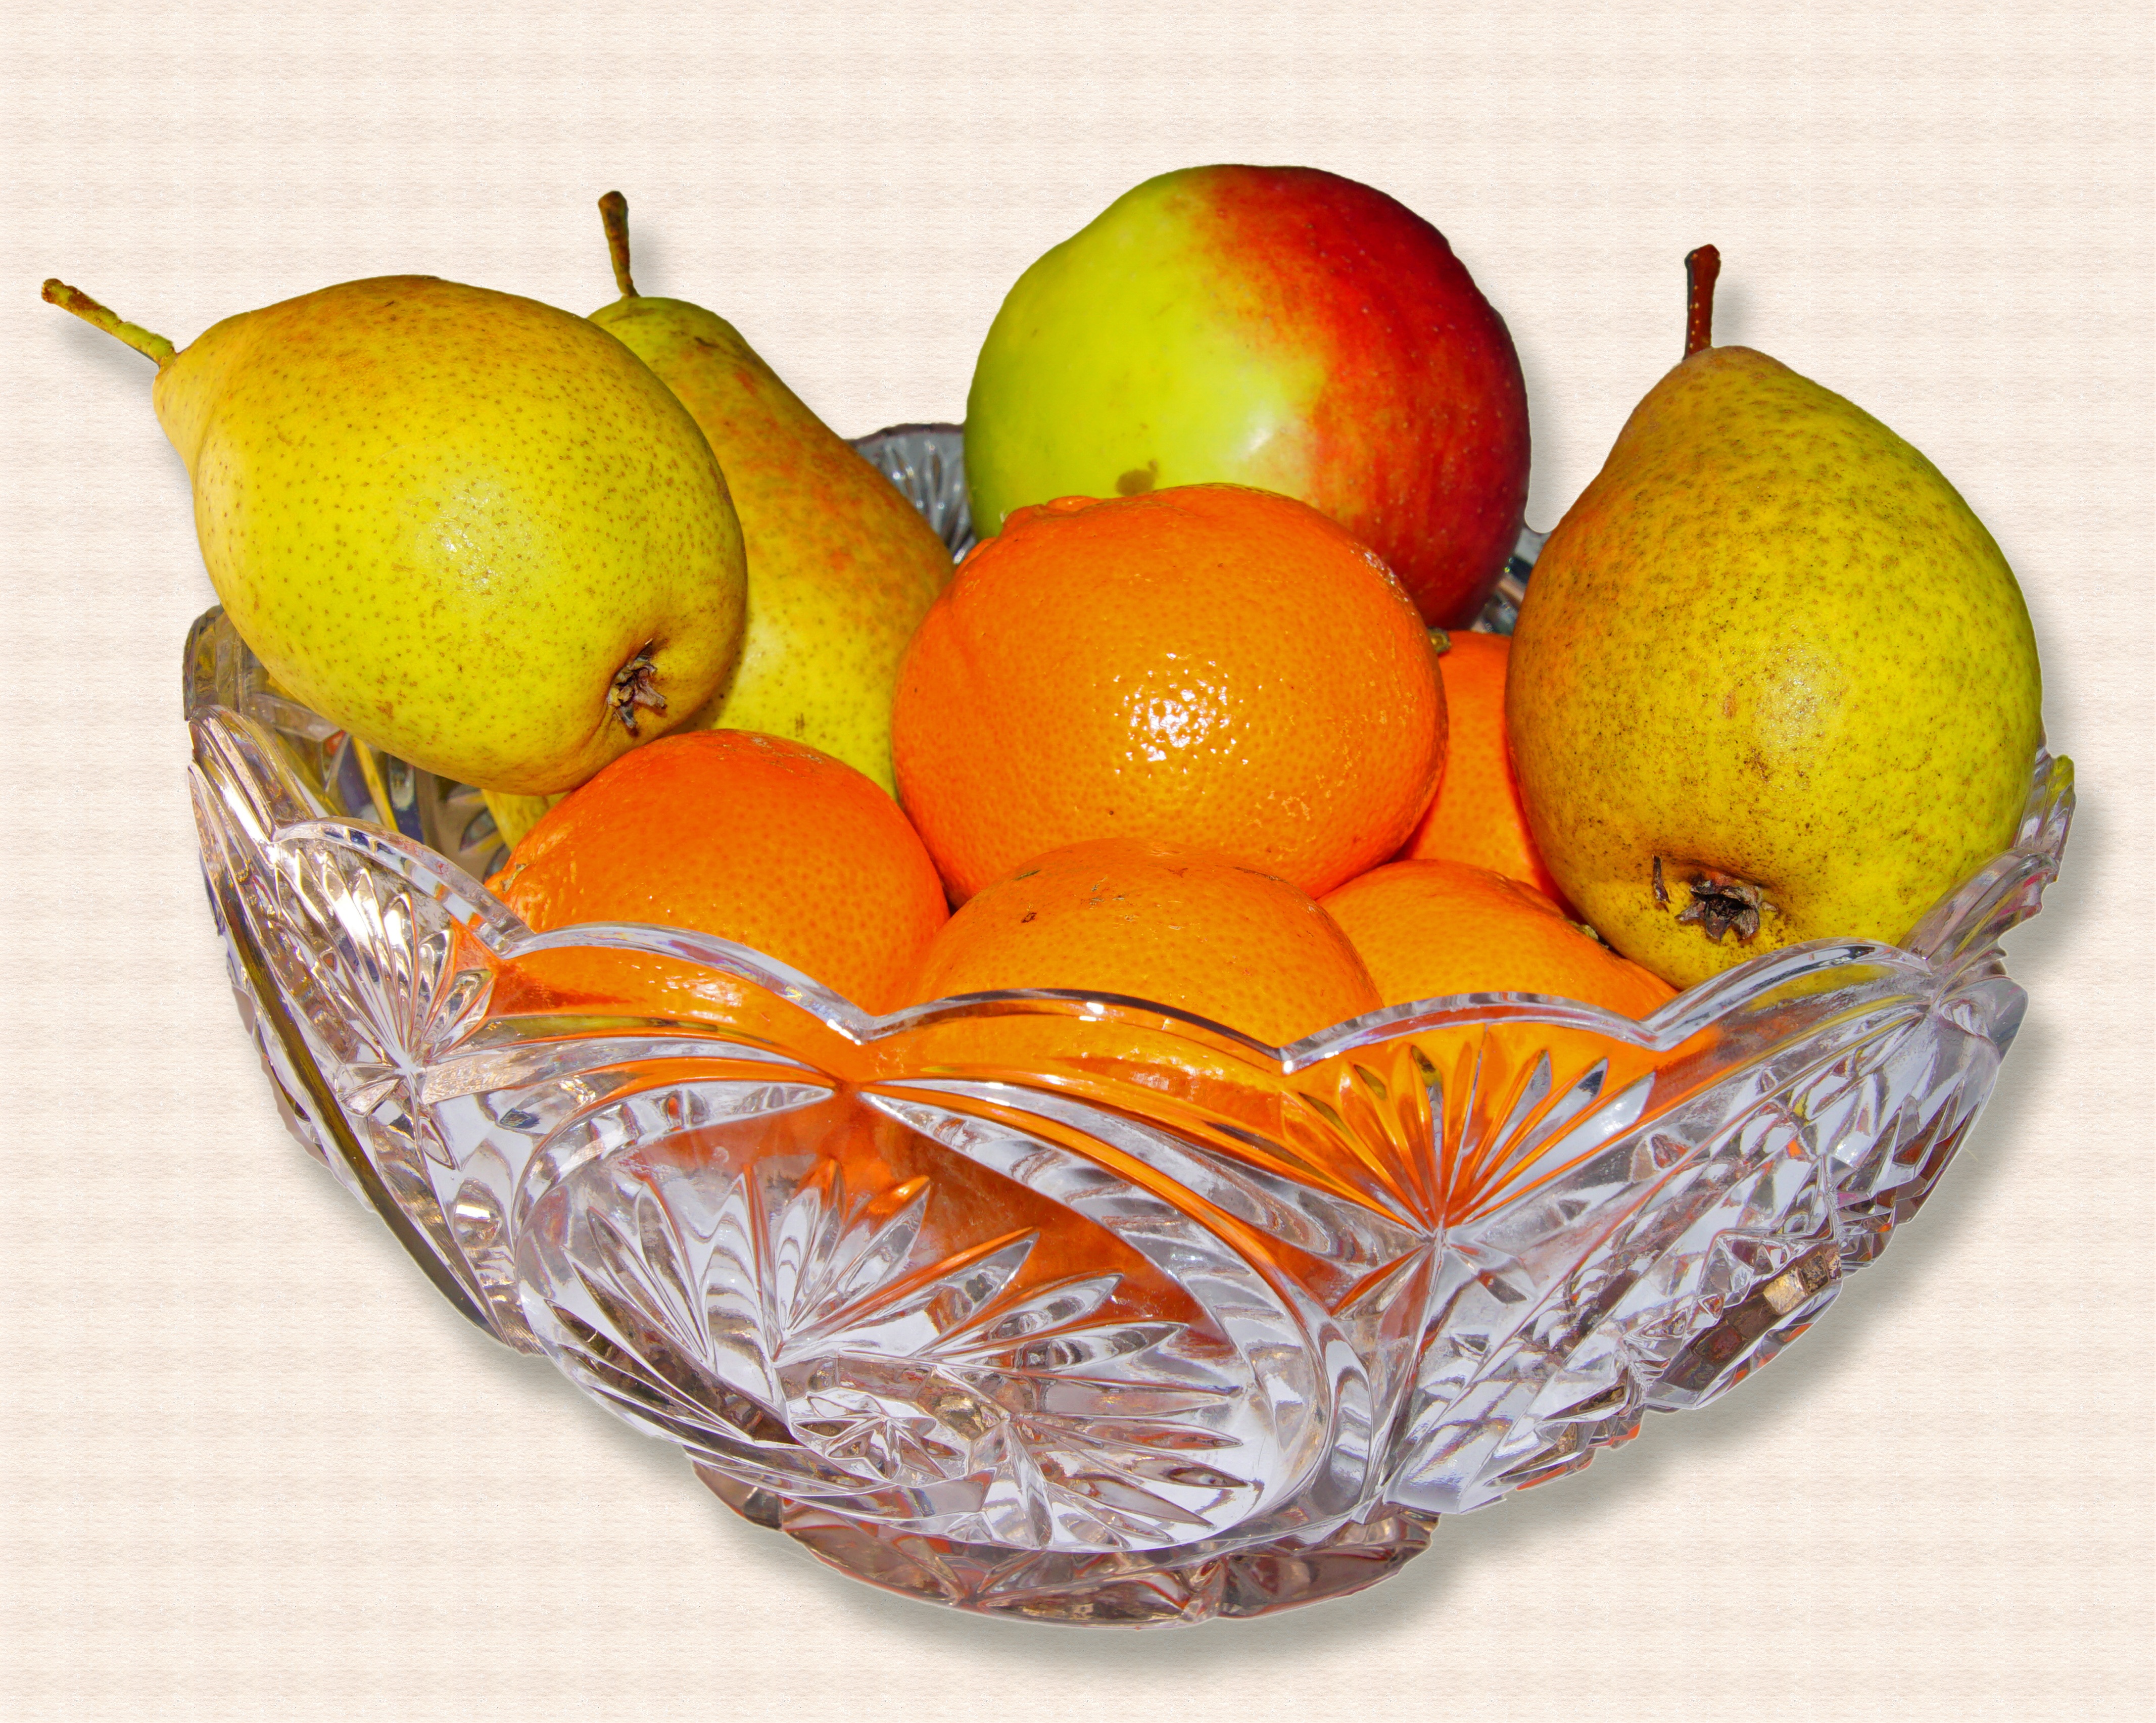 Смартик убрал несколько фруктов в каждой вазе осталось по одному фрукту